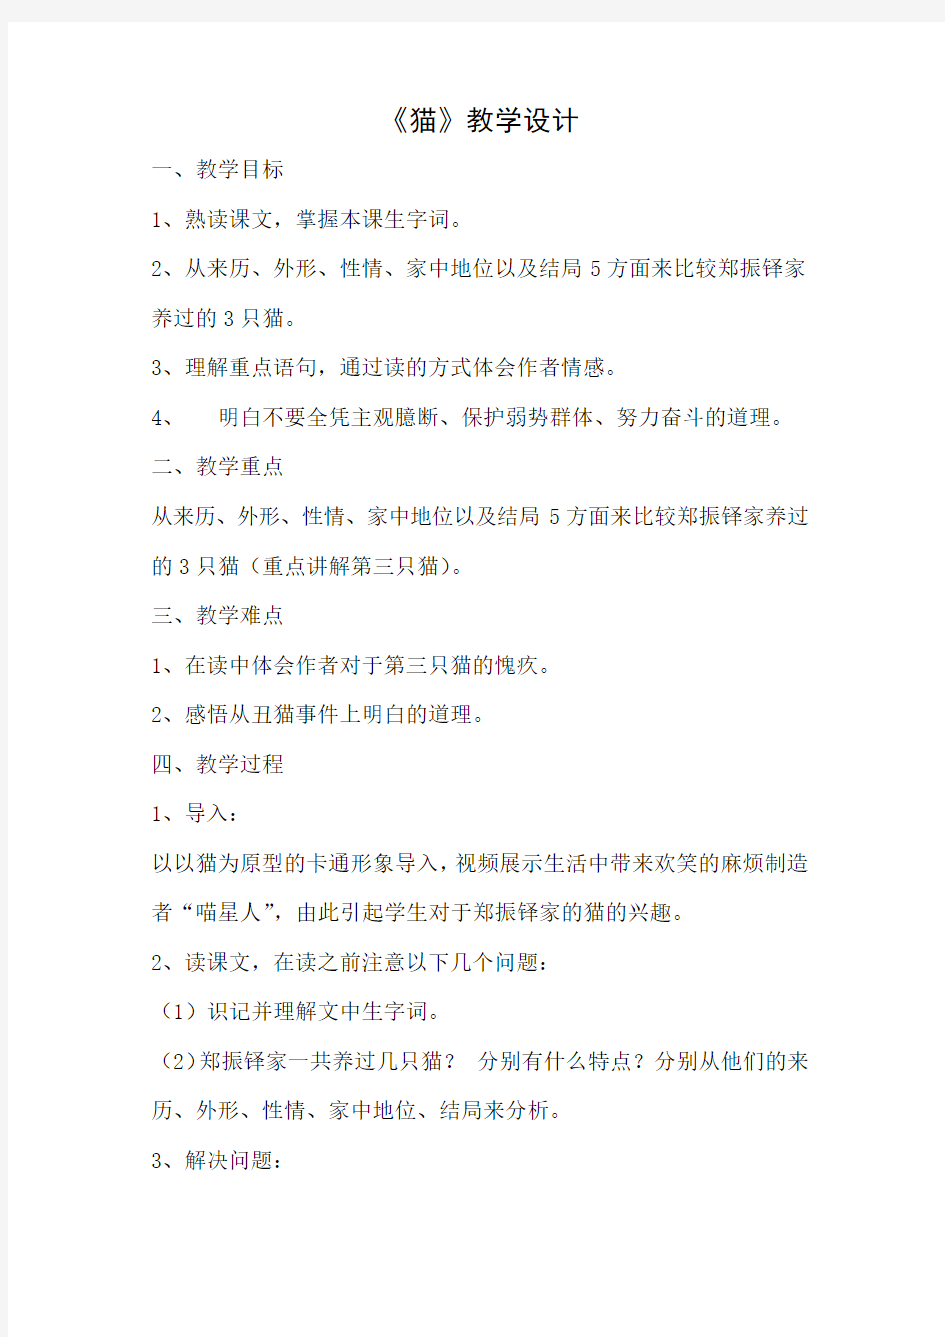 初中语文_猫教学设计学情分析教材分析课后反思